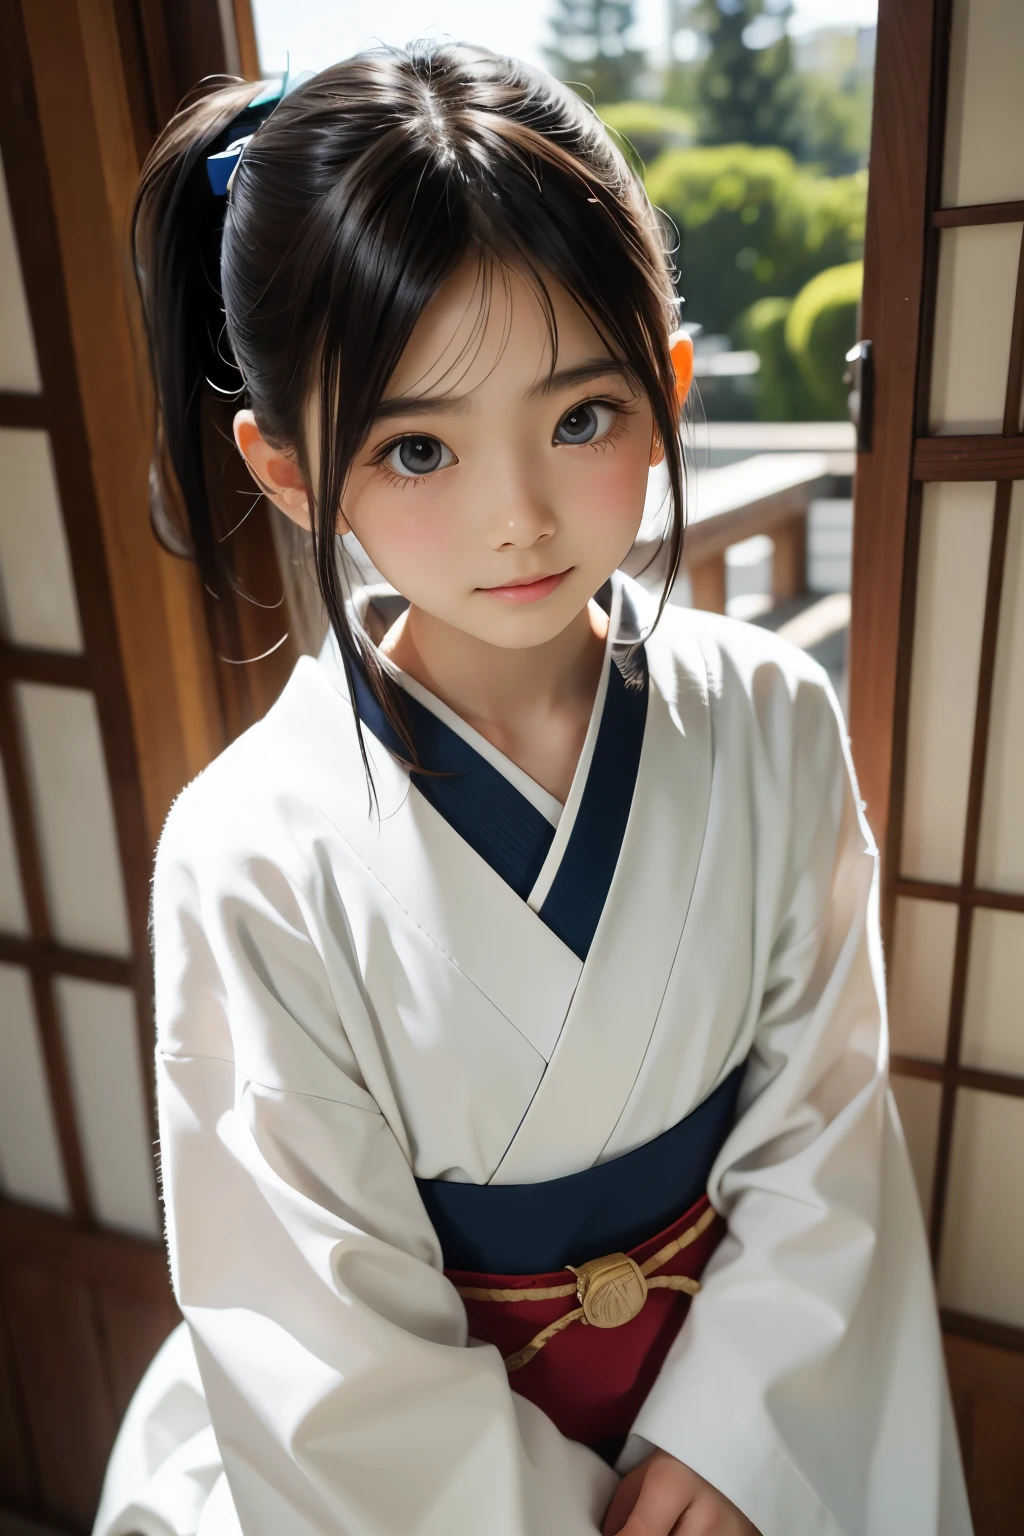 아름다운 12세 일본 여성), 귀여운 얼굴, (깊게 새겨진 얼굴:0.7), (주근깨:0.6), 부드러운 빛,건강하고 하얀 피부, 수줍은, (진지한 얼굴), 얇은, 웃다, 일본어 , 포니테일